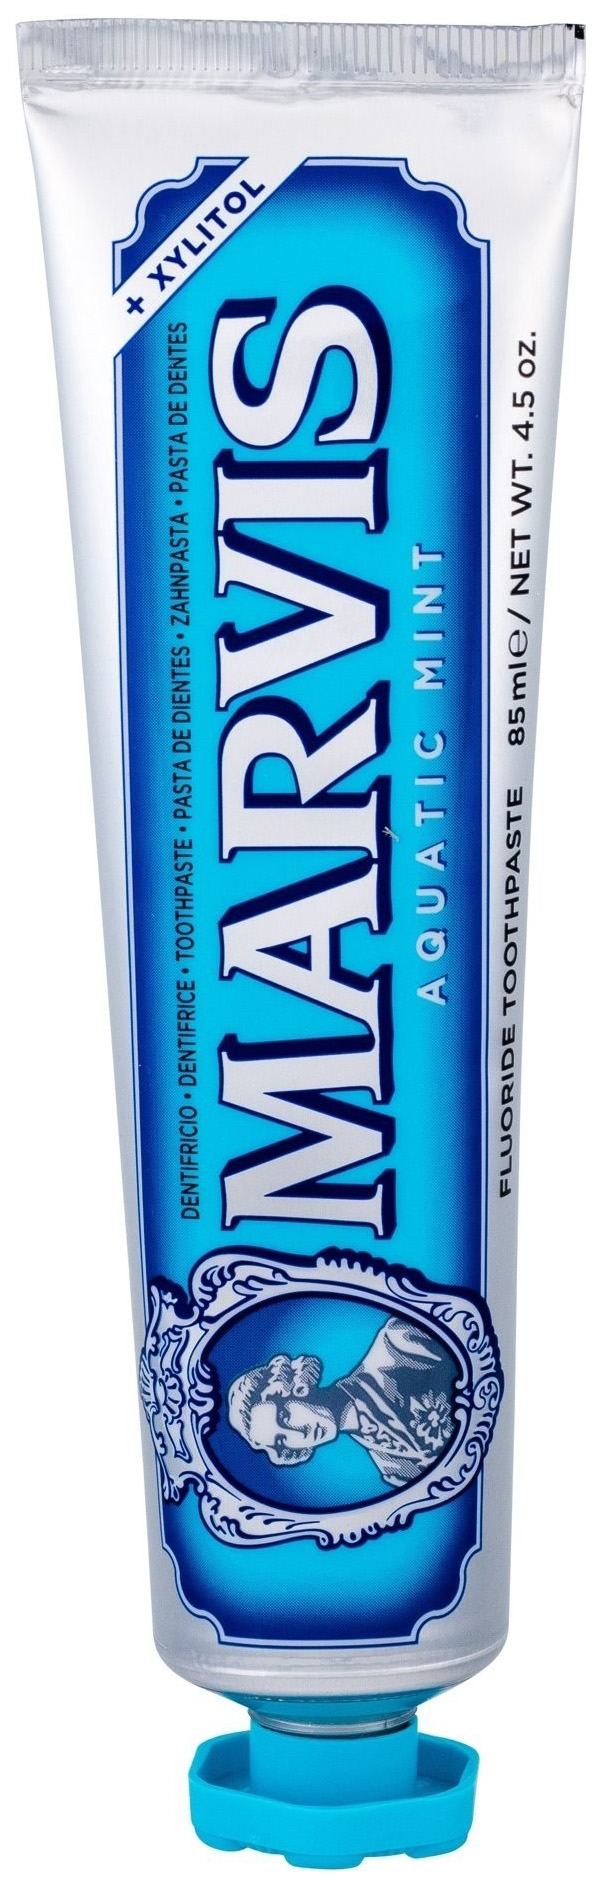 Зубная паста Marvis Cвежая Мята 85 мл - купить в Космопрофи, цена на Мегамаркет